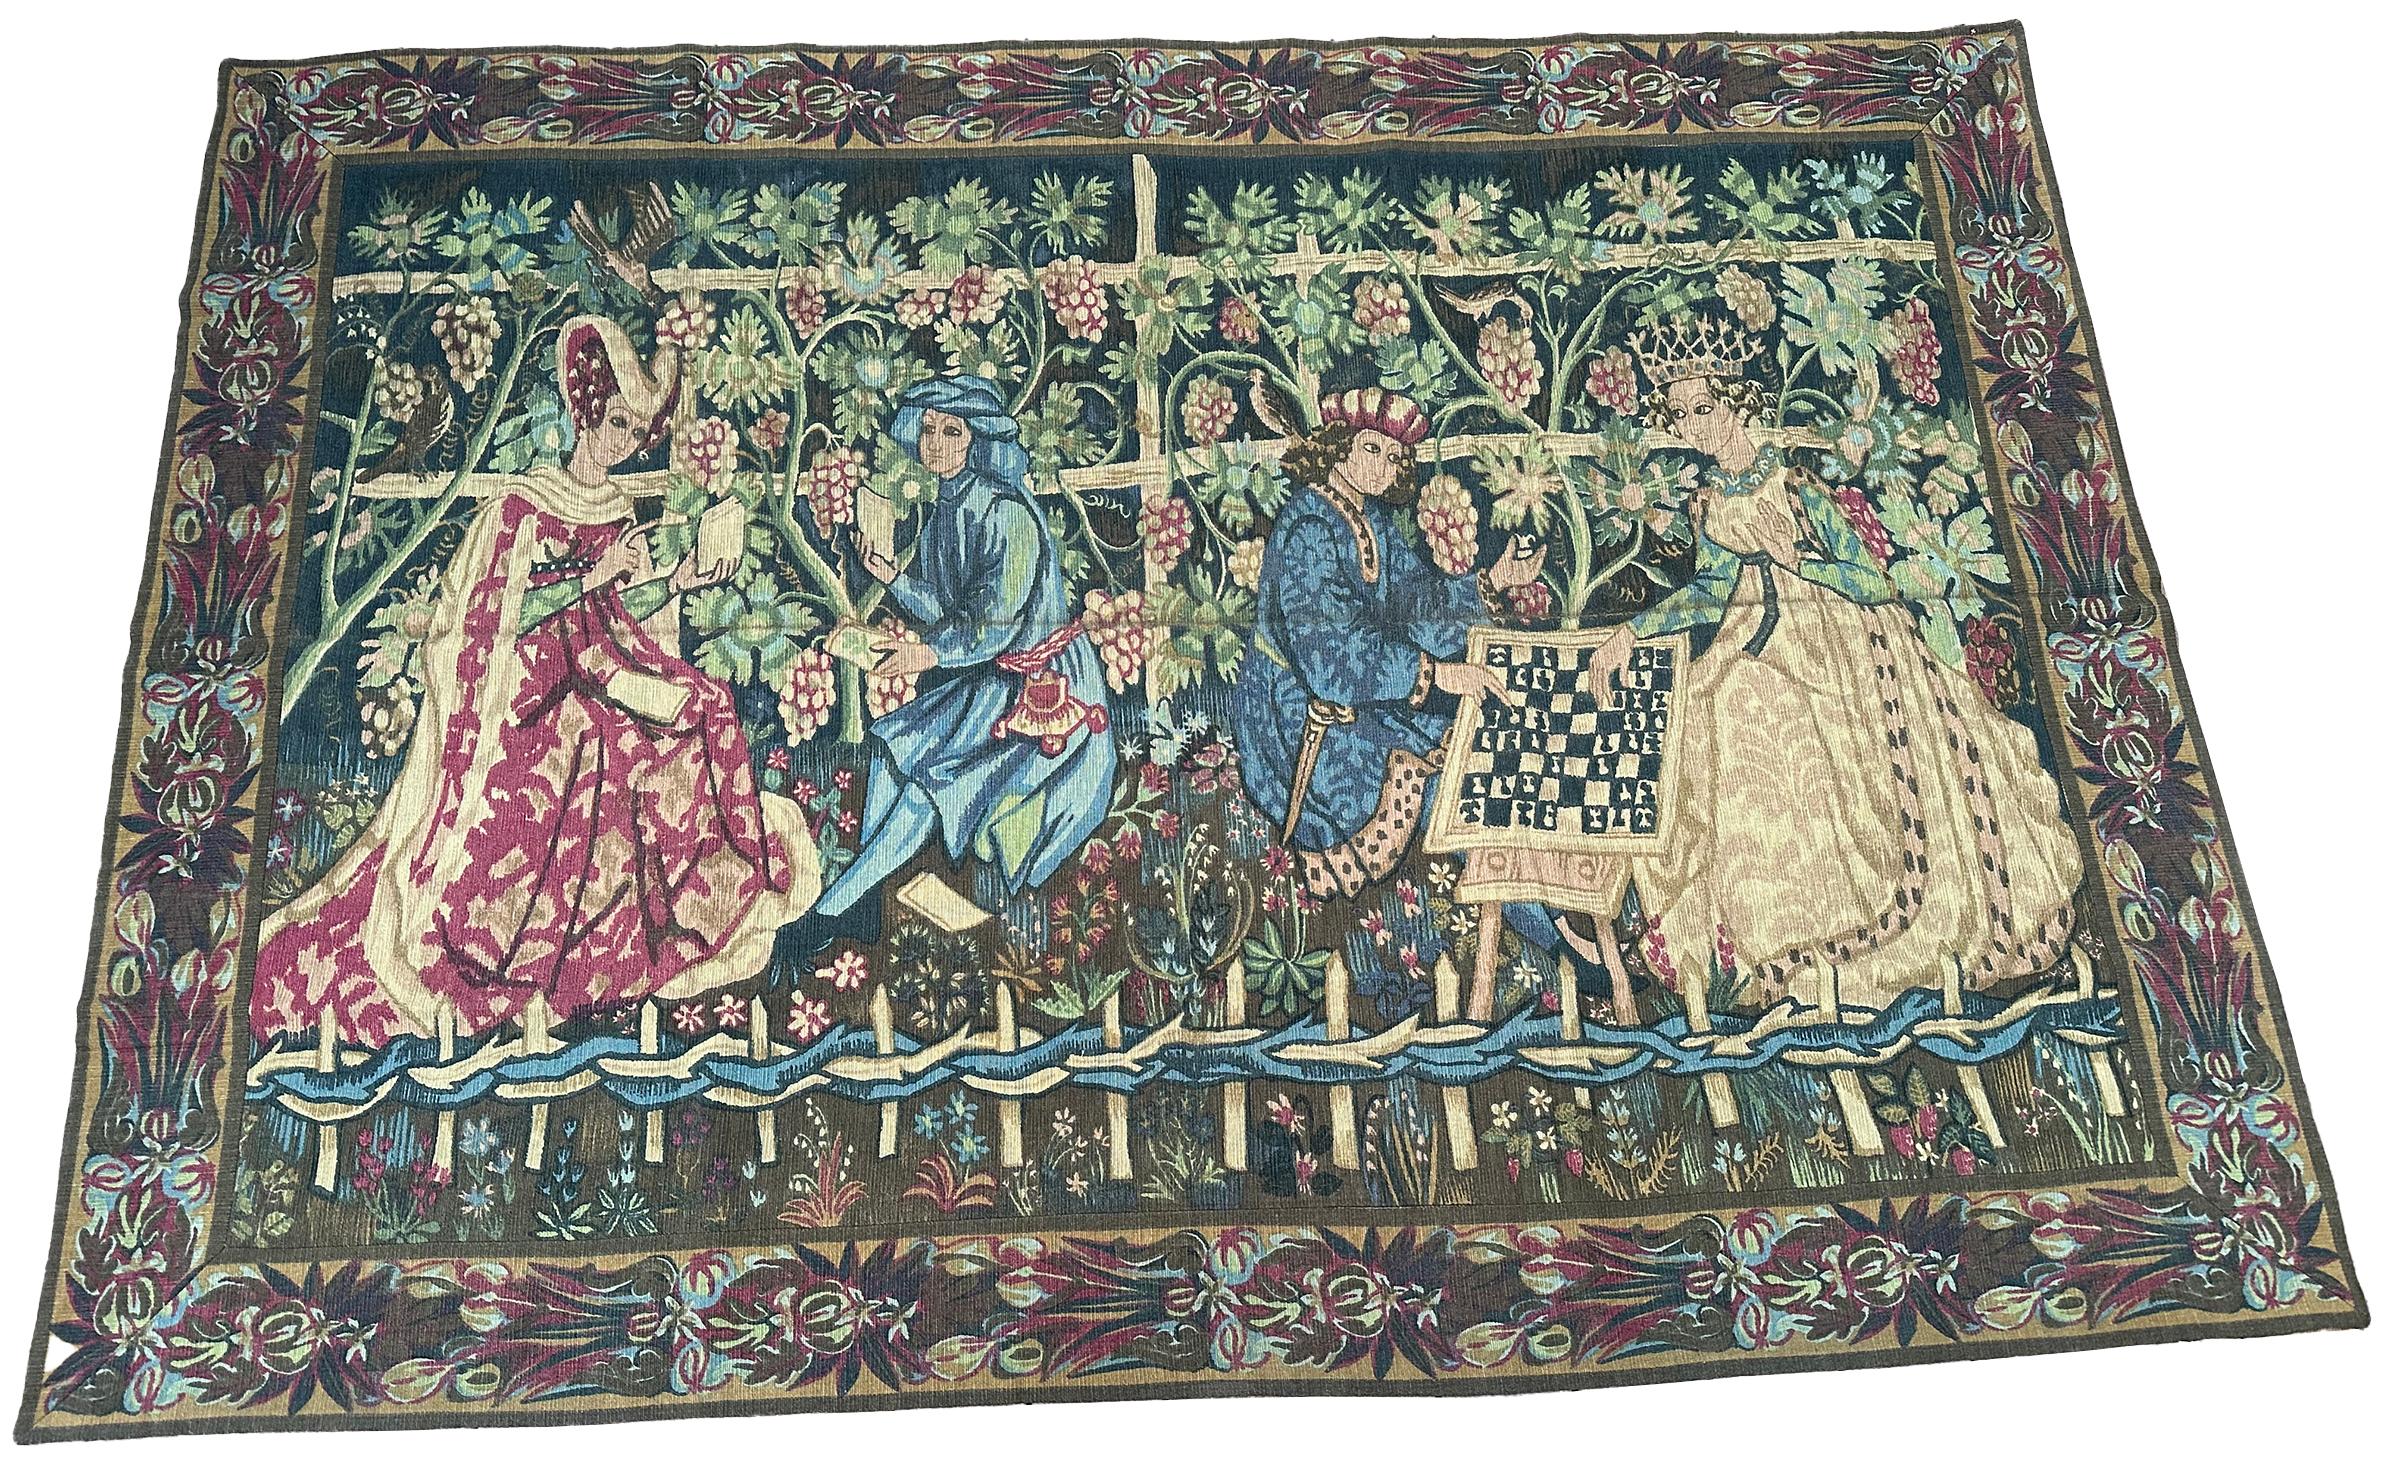 Antiker französischer Wandteppich Verdure Noblemen Royalty Verdure 5x9 158cm x 272cm 1920

Ein prächtiger antiker französischer Wandteppich, der eine Szene mit Adligen inmitten von exotischem Grün und Blumen zeigt. Schöne Farbgebung und eine